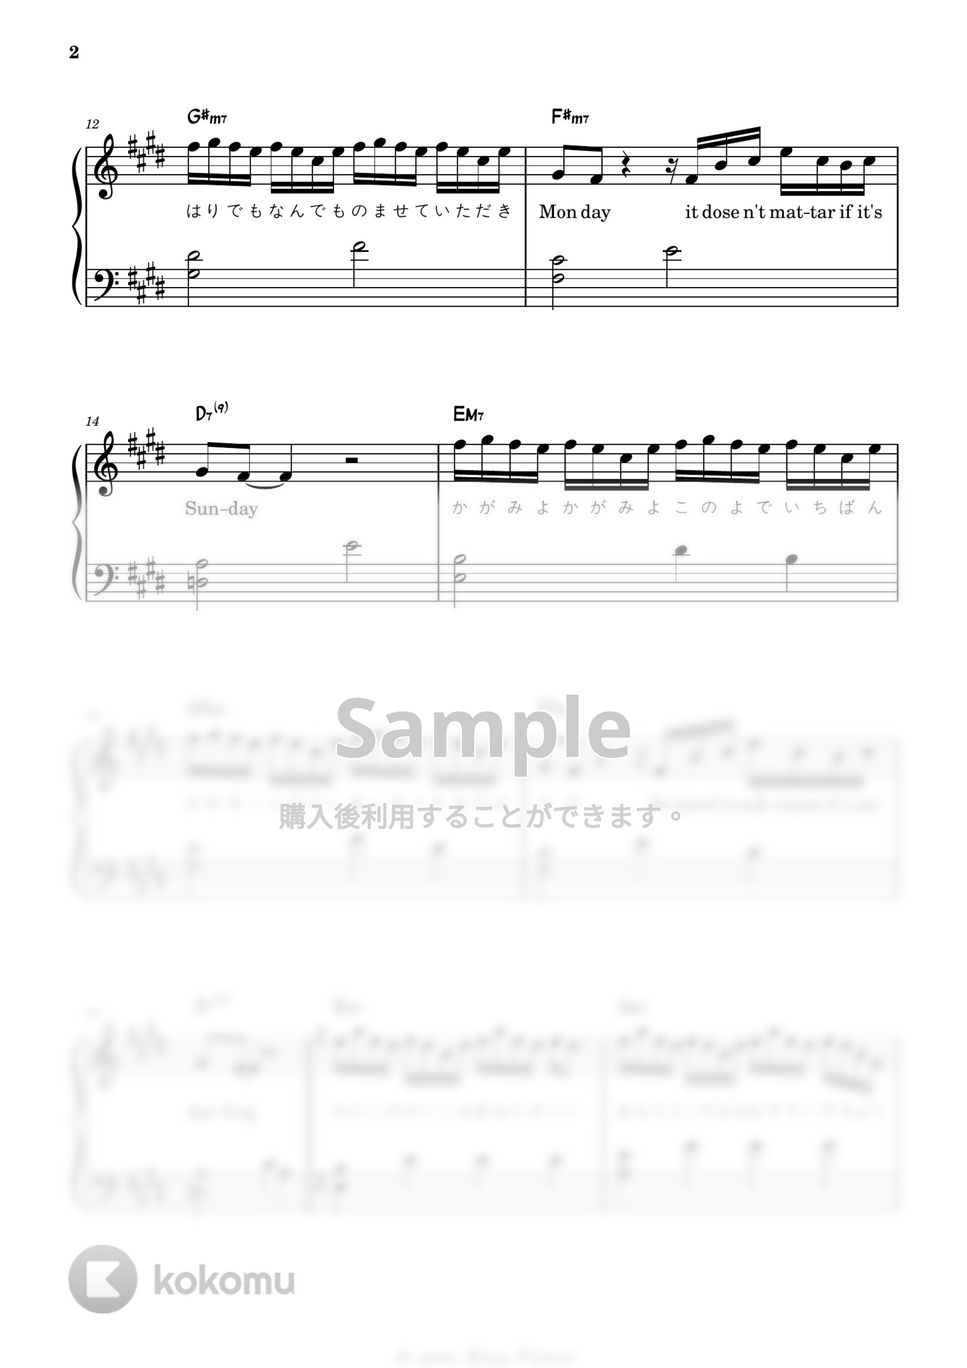 藤井風(Fujii Kaze) - 死ぬのがいいわ (ピアノ両手 / 上級 / 歌詞付き) by A-sam